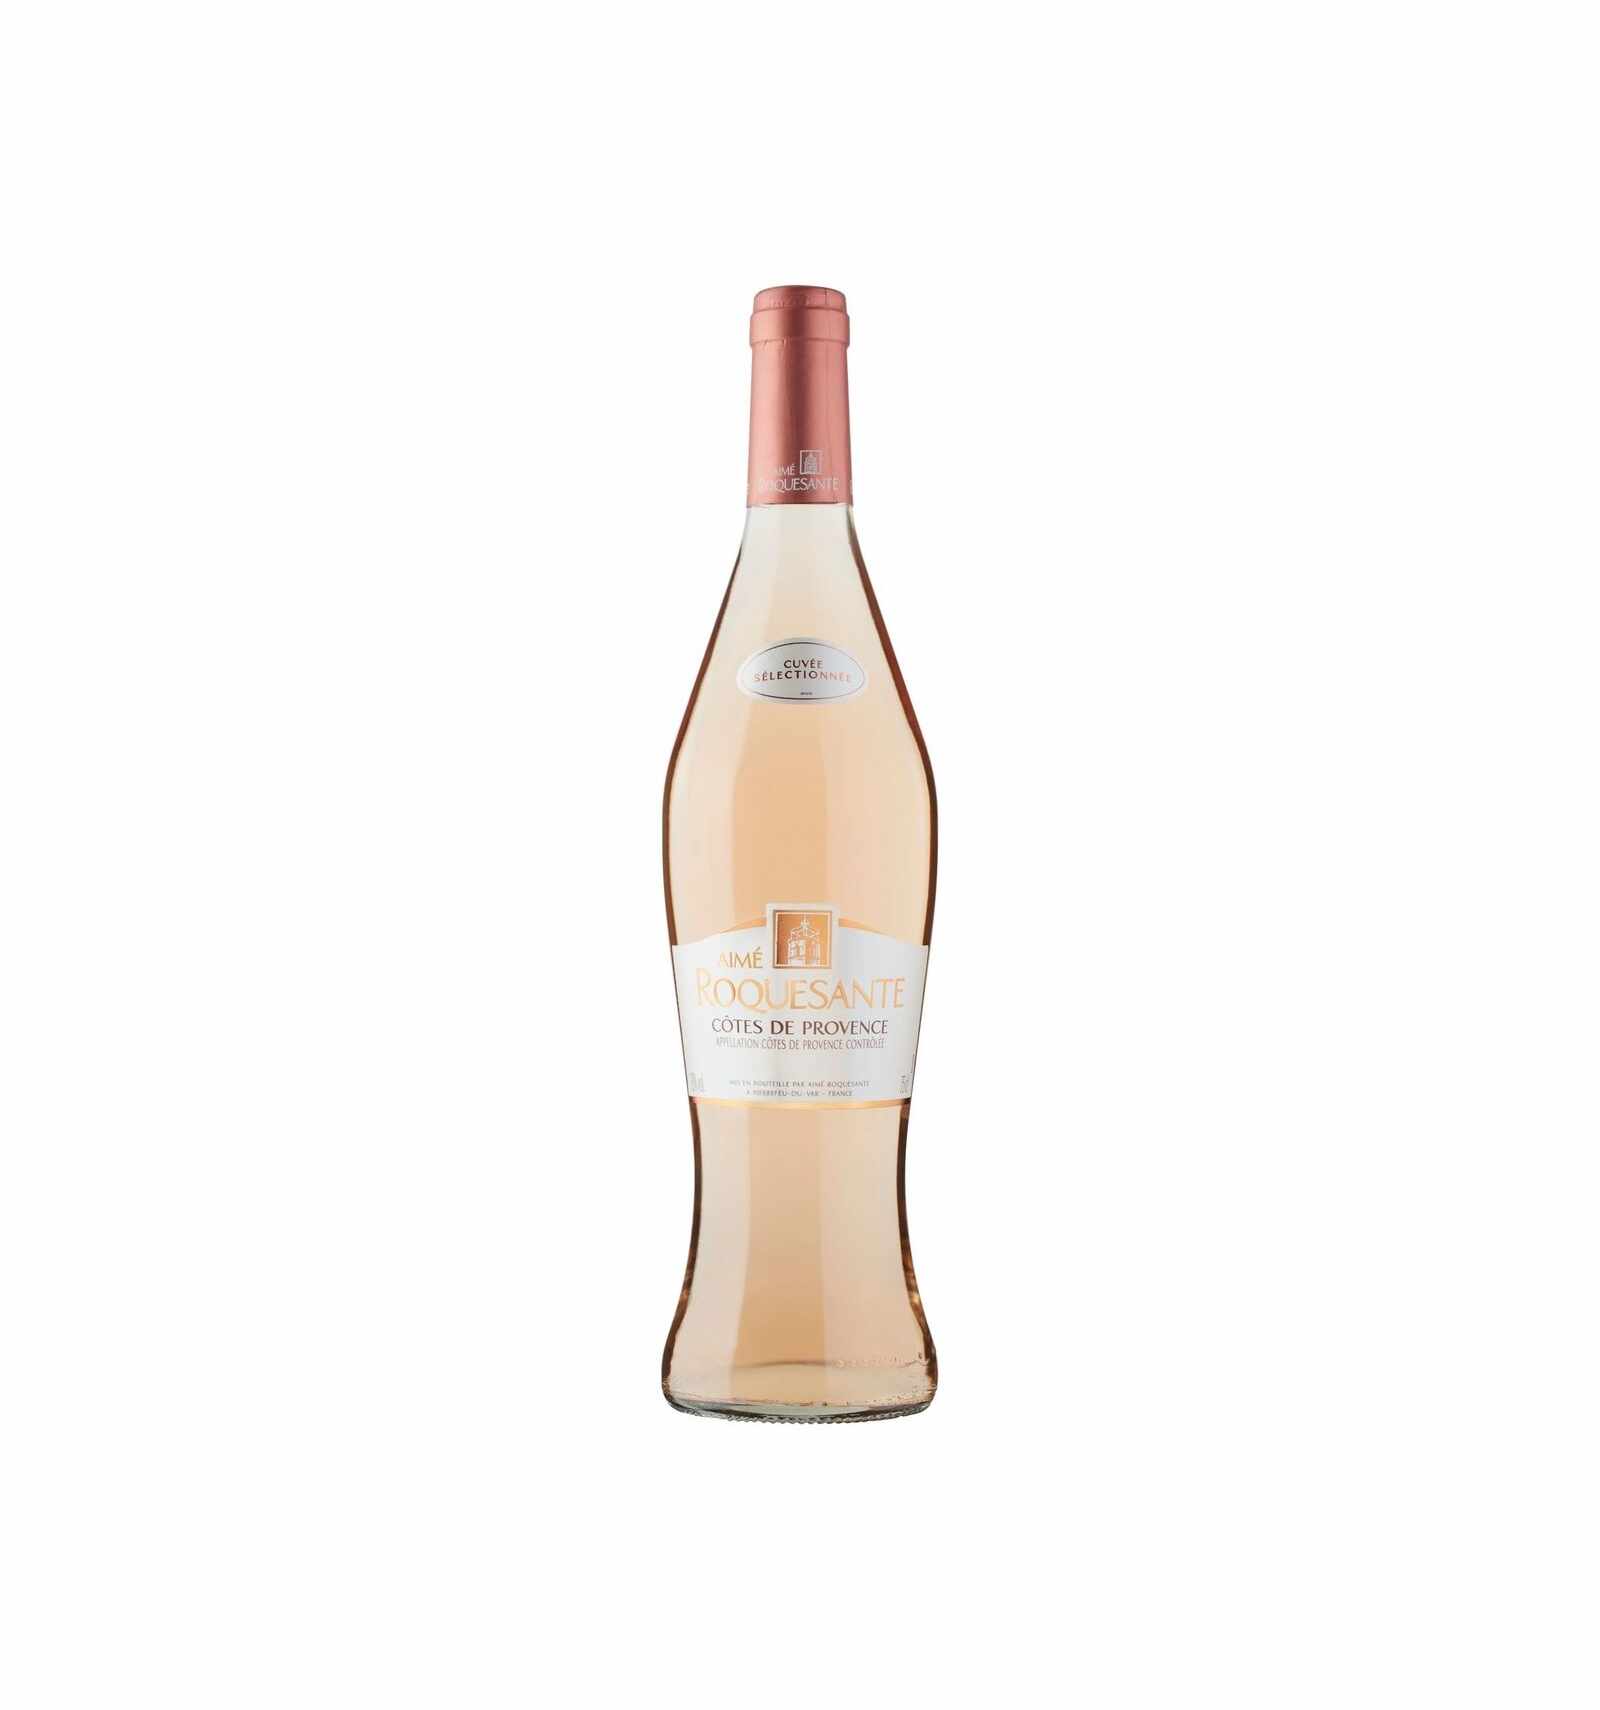 Vin roze, Cotes De Provence Aime Roquesante, 12.5% alc., 0.75L, Franta